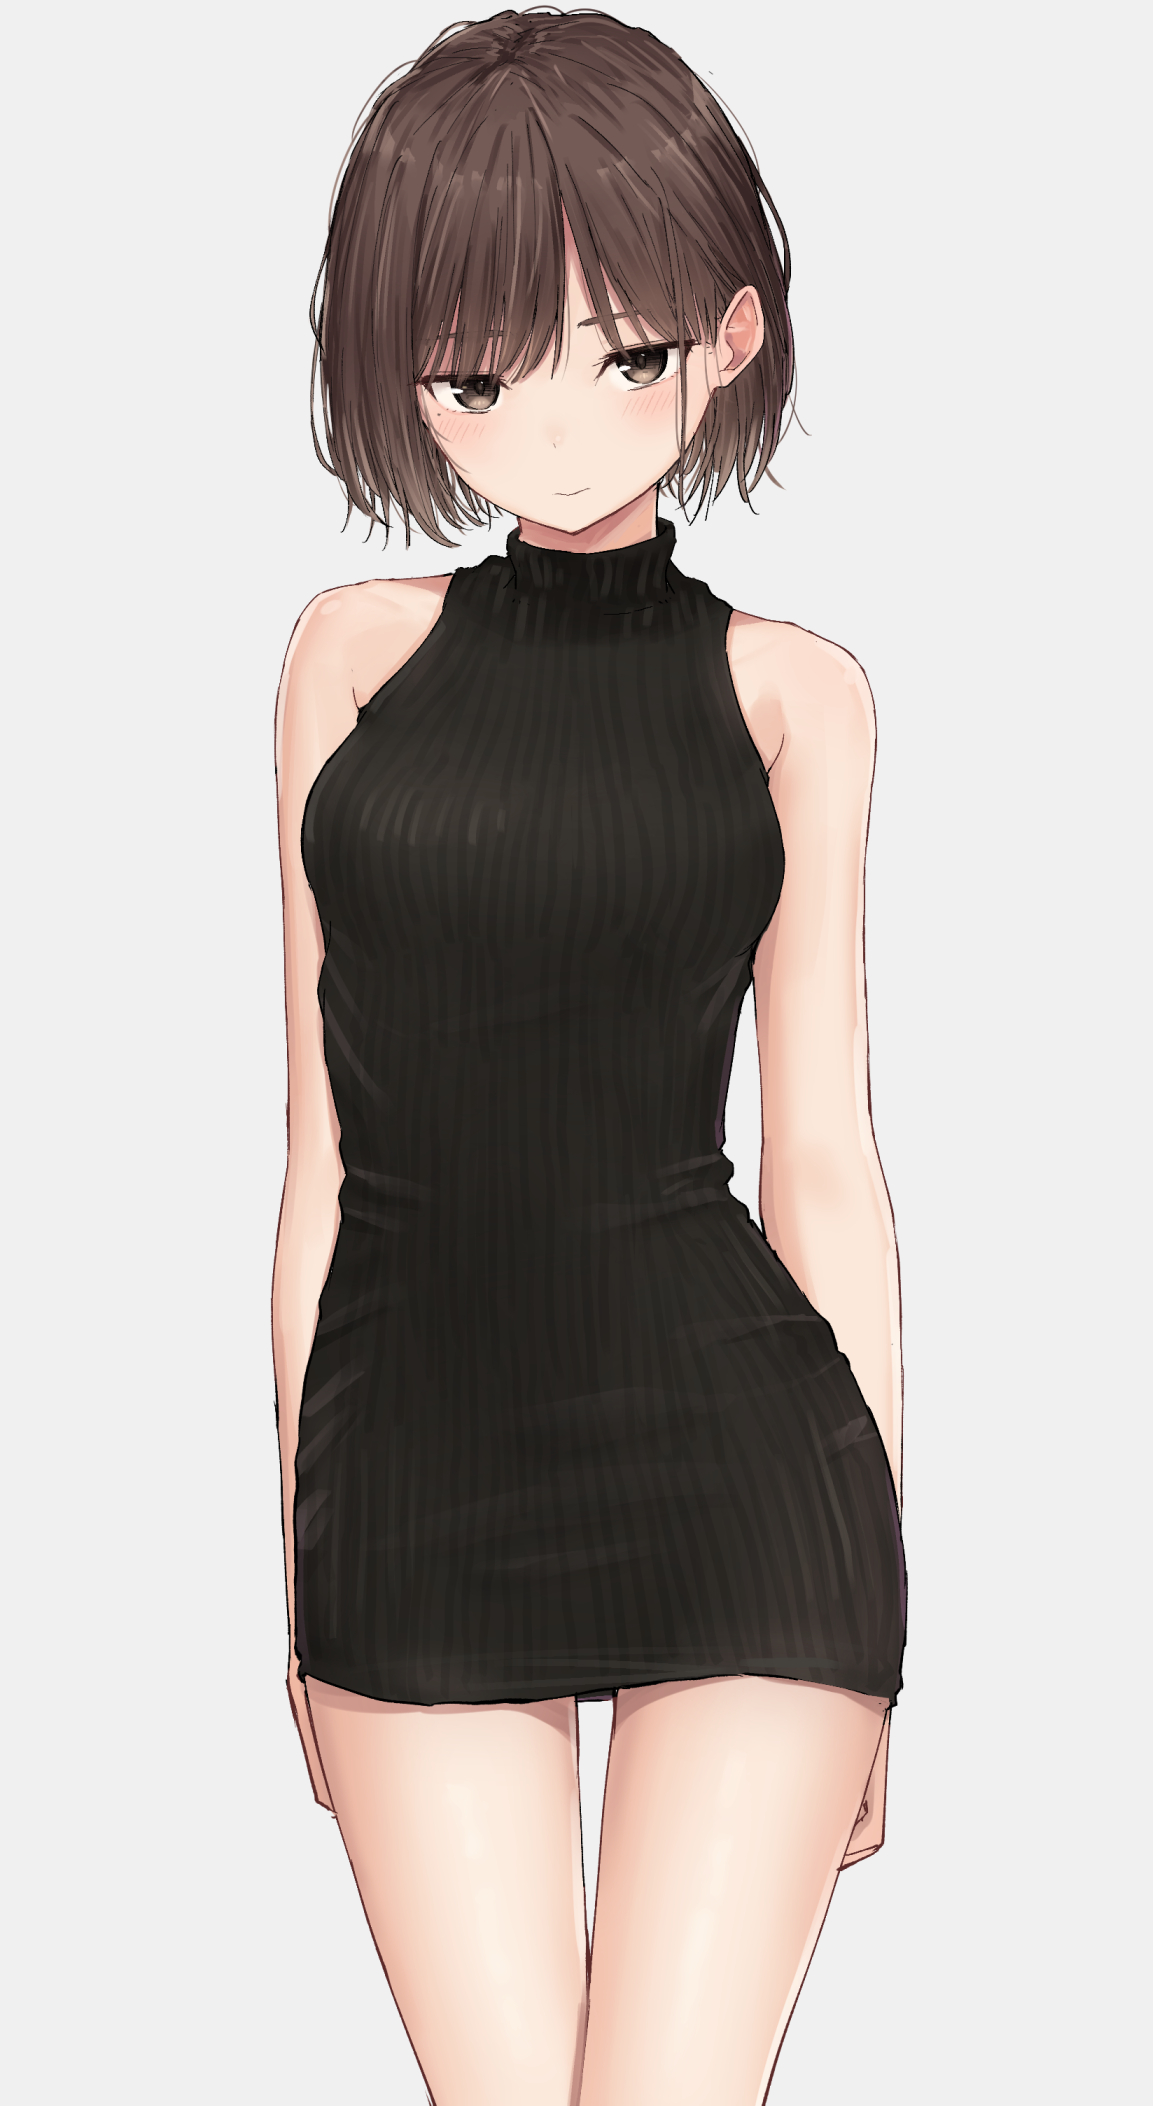 anime girl hot dress